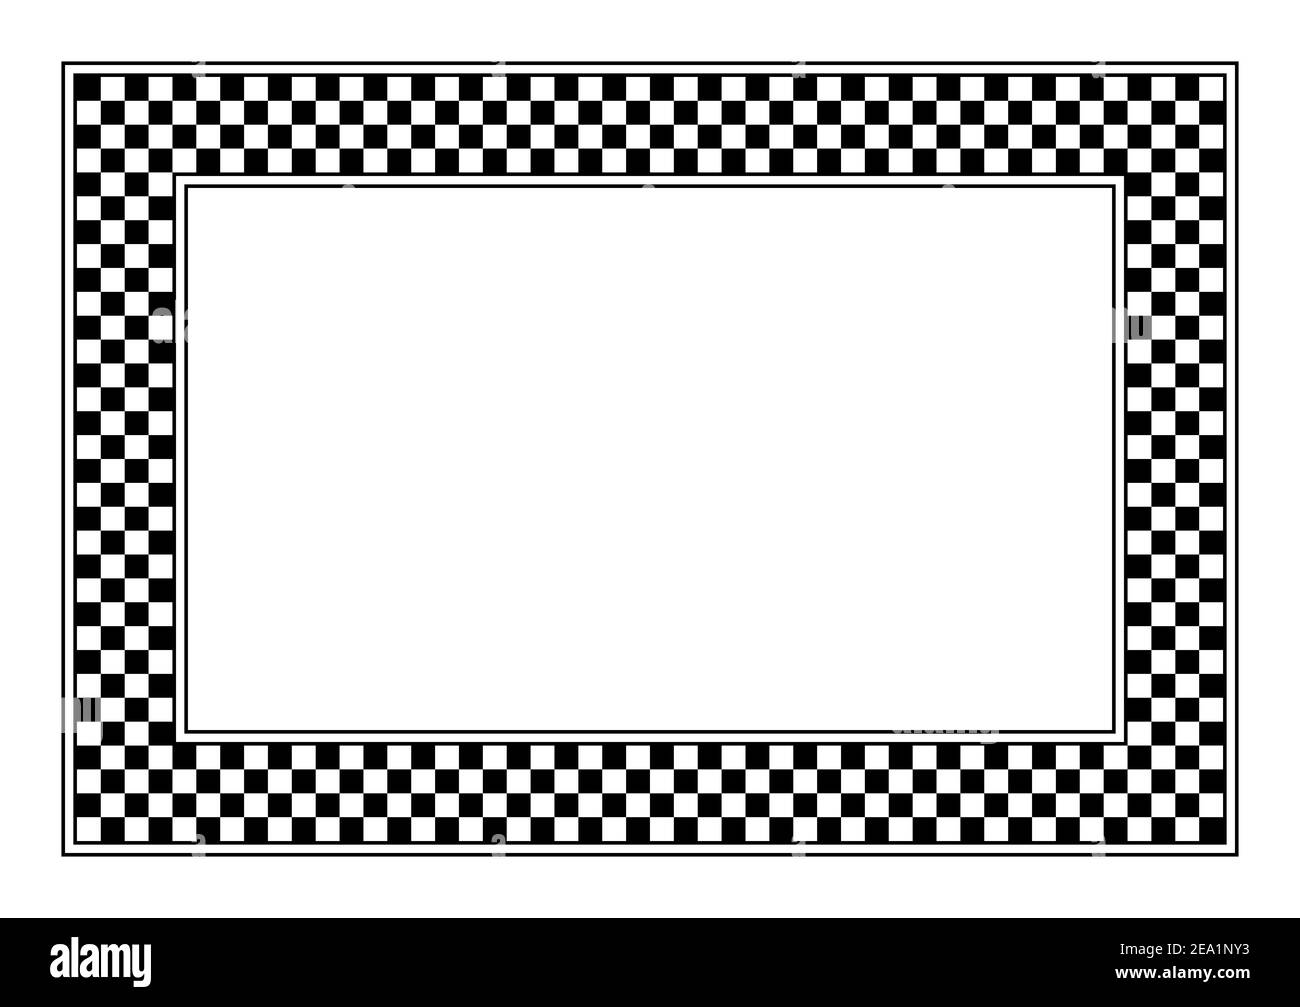 Schema a scacchiera, cornice rettangolare. Una cornice a scacchi, costituita da uno schema a scacchiera costituito da quadrati alternati in bianco e nero. Foto Stock